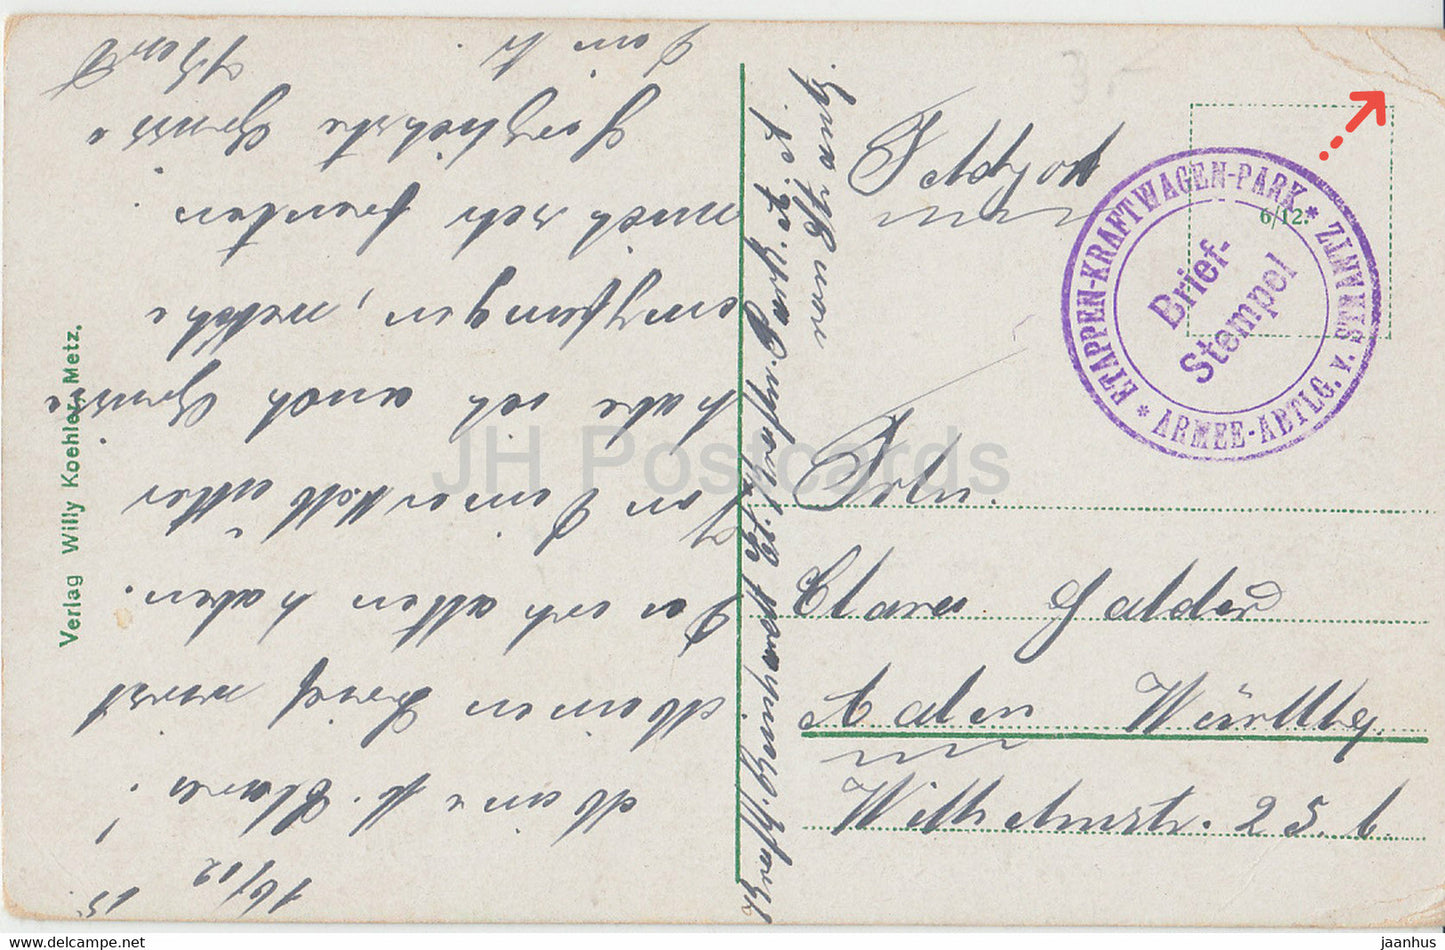 Metz - Generalkommando - Etappen Kraftwagen Park - Feldpost - alte Postkarte - 1915 - Frankreich - gebraucht